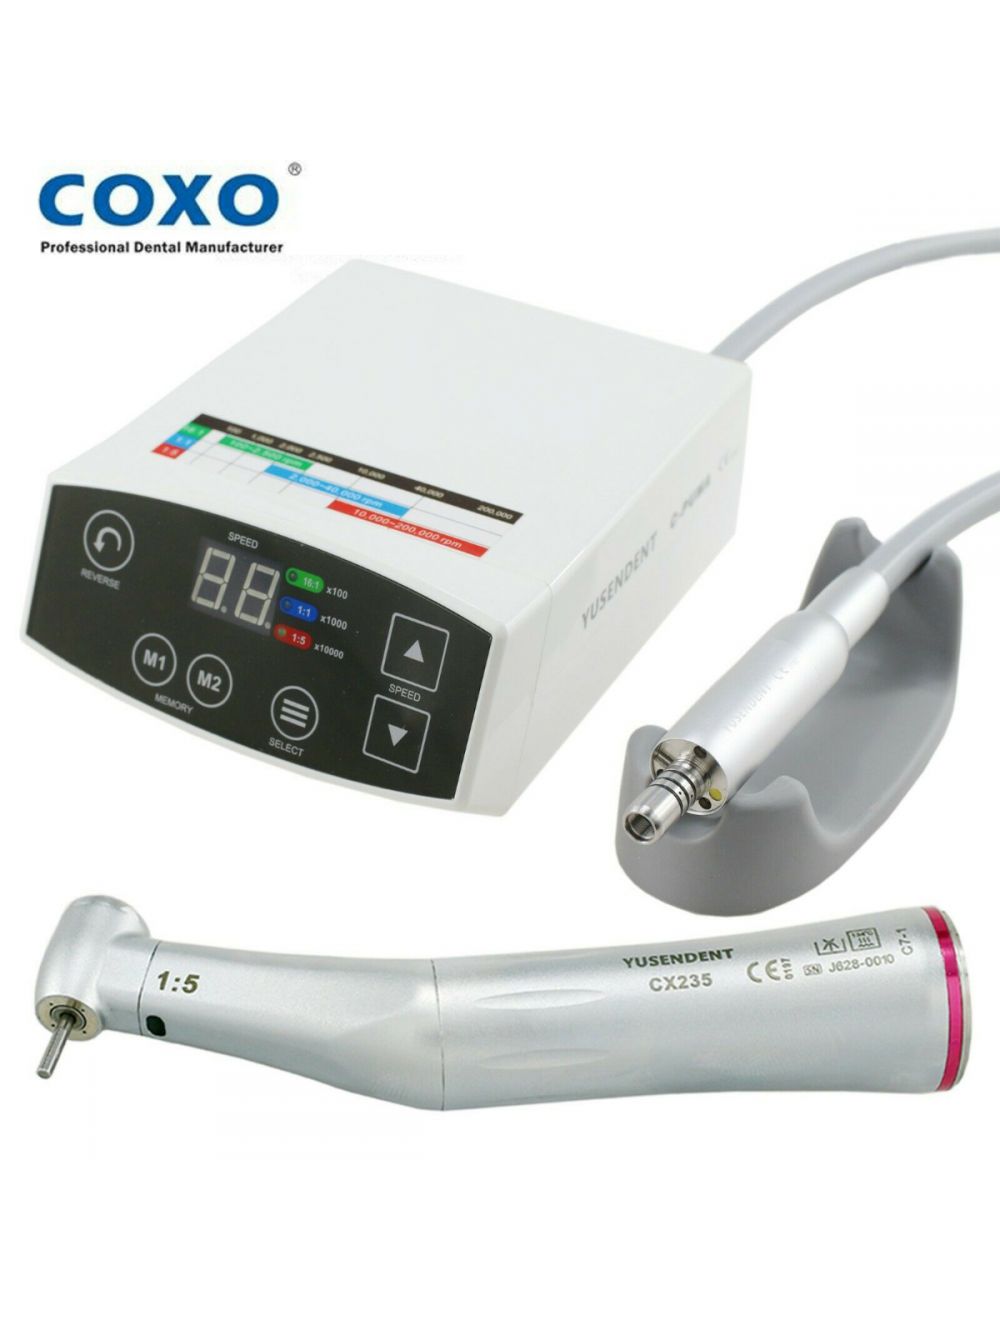 Micromotor COXO  Selemed: Equipos odontológicos